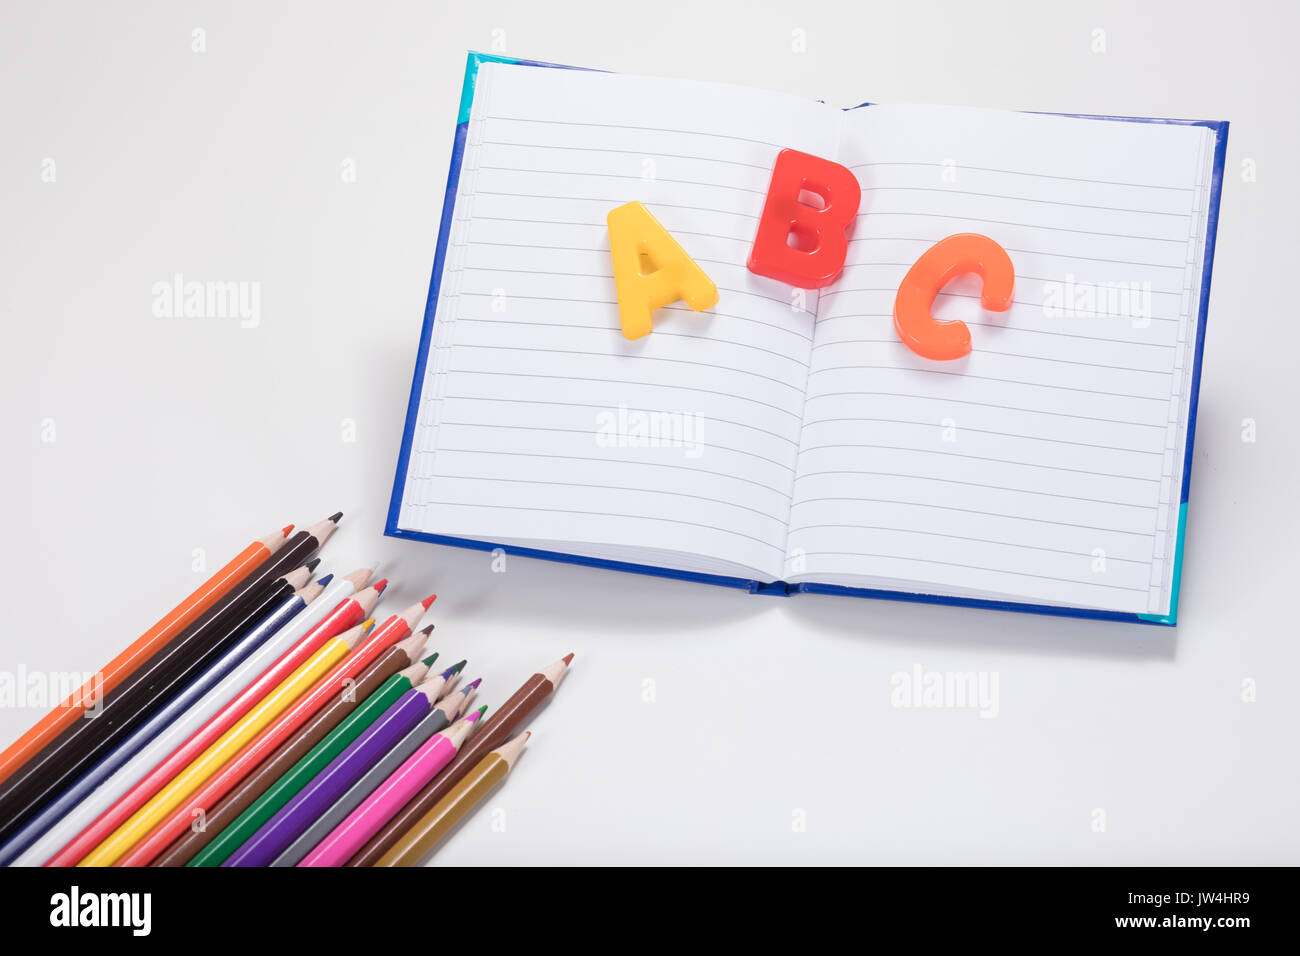 Un concepto de aprendizaje escolar con lápices de colores, libros de escuela abierta y ABC de las letras del alfabeto en una llanura fondo blanco con espacio de copia. Foto de stock